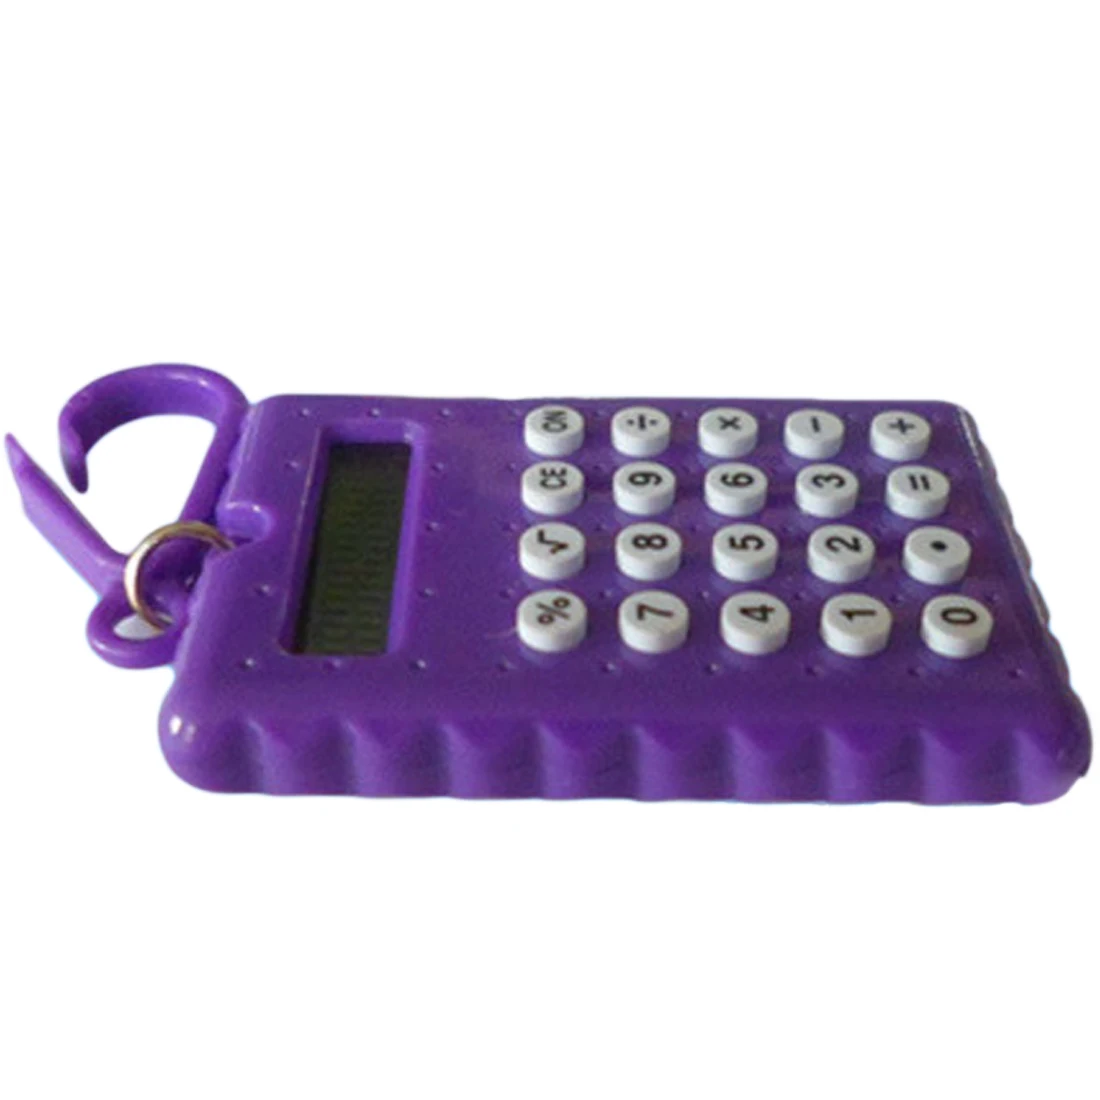 NOYOKERE Новое поступление студенческий мини электронный калькулятор карамельный цвет расчет офисные принадлежности подарок супер маленький